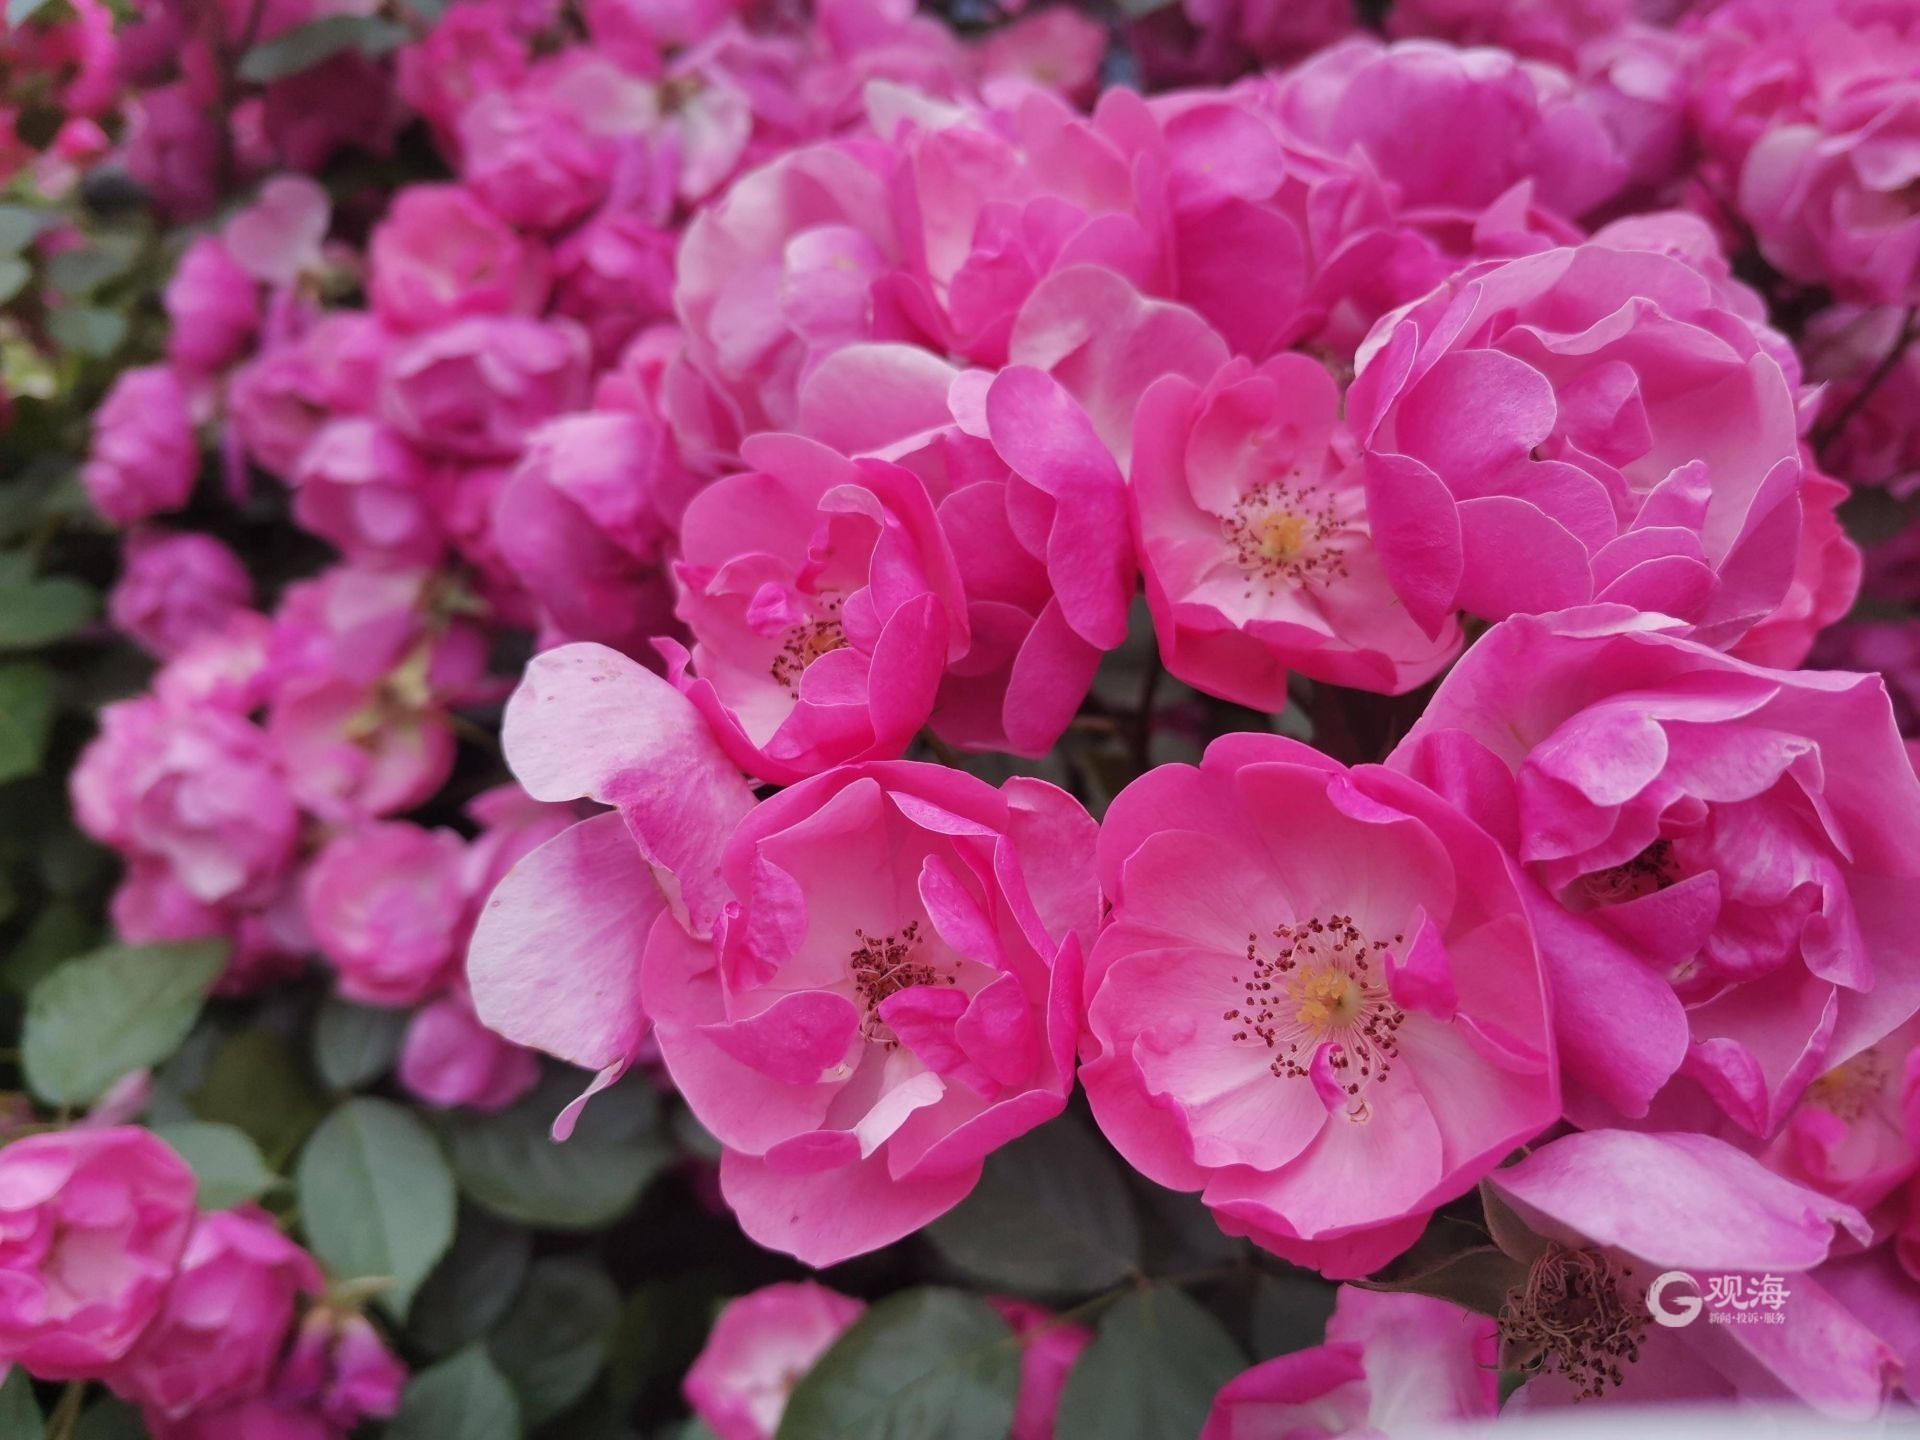 绝美打卡地+1 青岛世博园蔷薇花进入观赏佳季